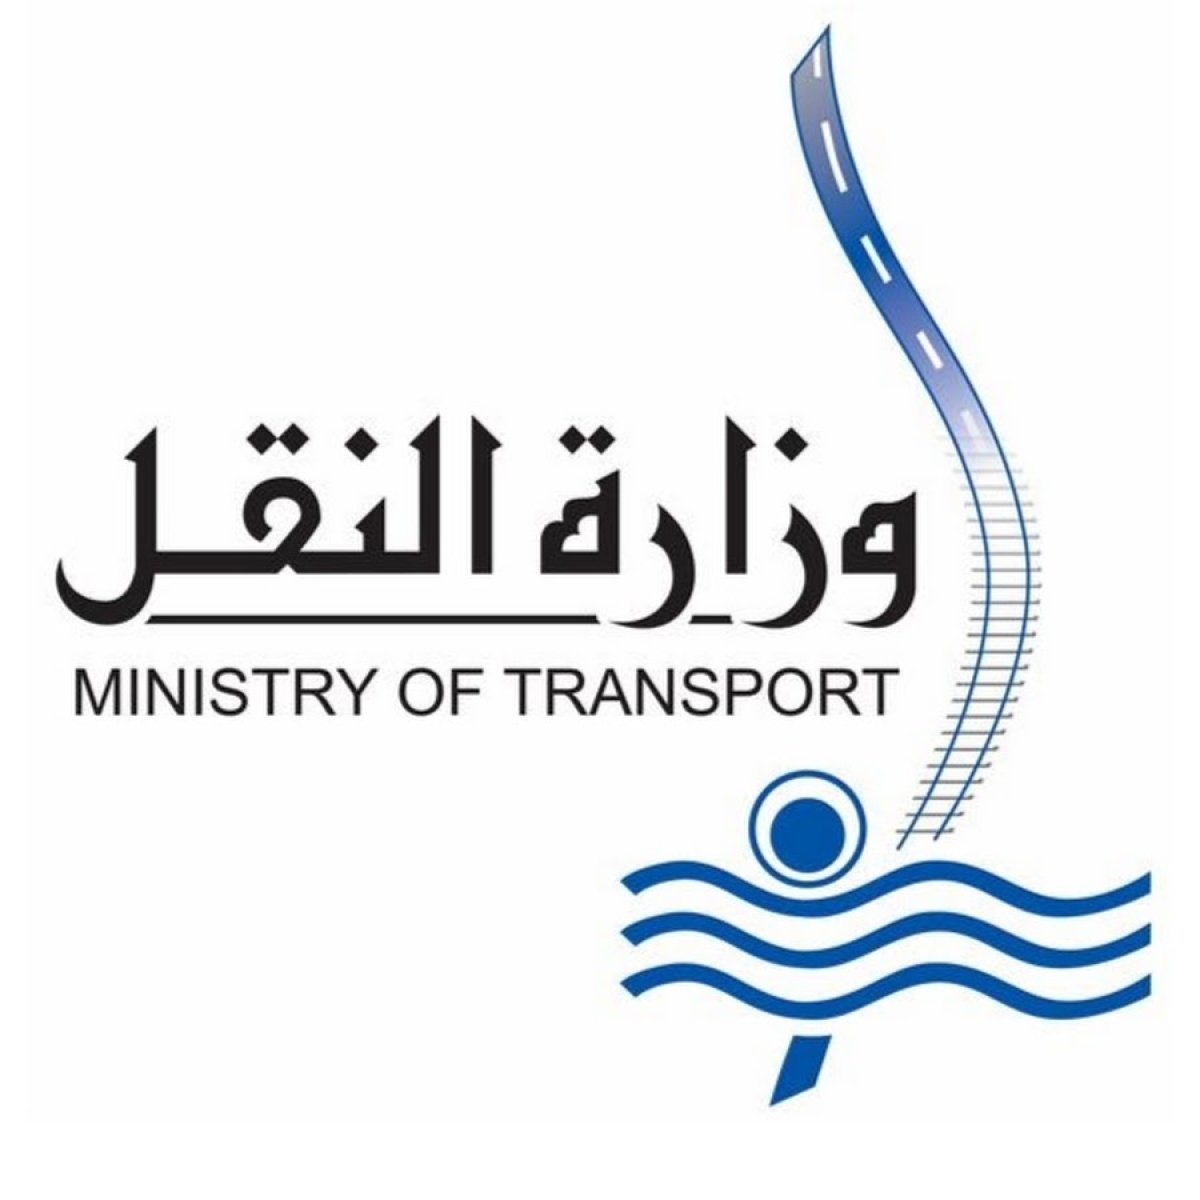 «وزارة النقل» تناشد المواطنين للمشاركة في التوعية بعدم اقتحام المزلقان أو السير عكس الاتجاه